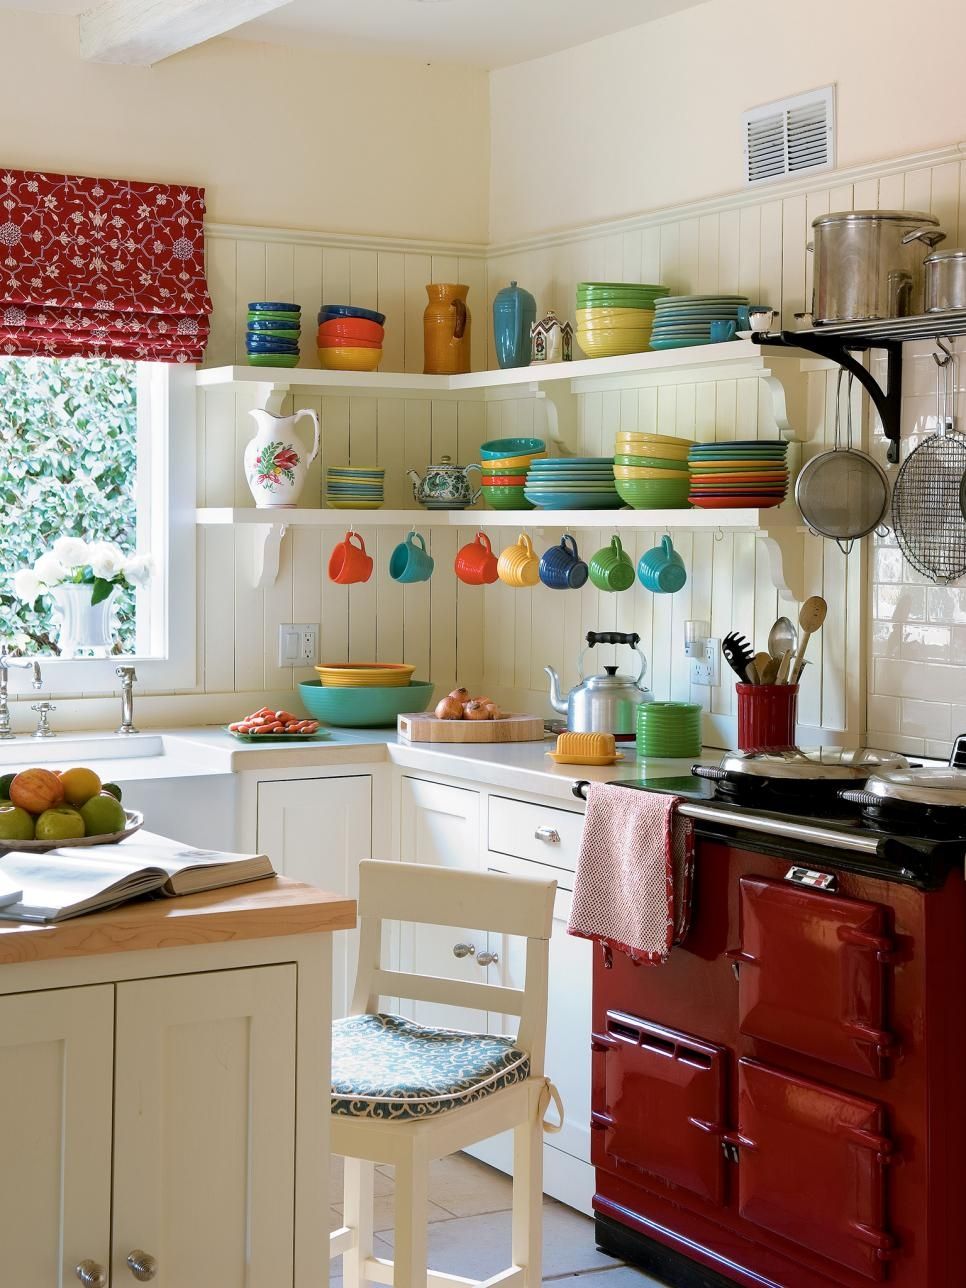 المطبخ الأبيض الداخلية مع مزيج متناغم من الألوان